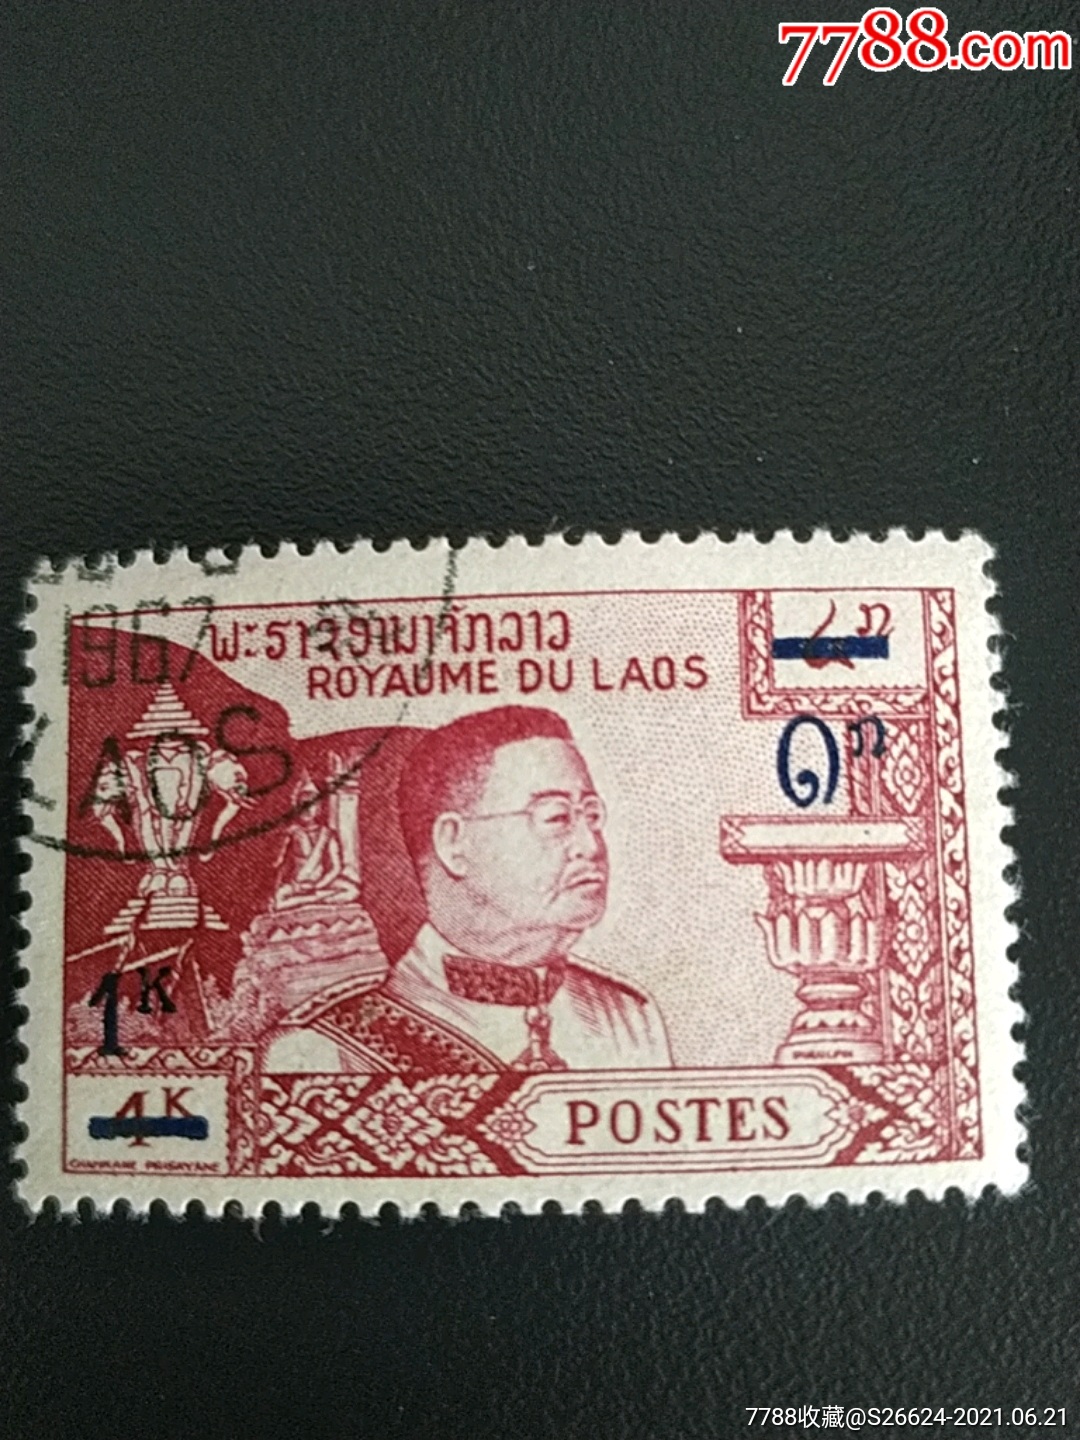 1959年老挝祖国宗教君主制宪法冯西萨旺国王加盖改值雕刻版邮票1枚销